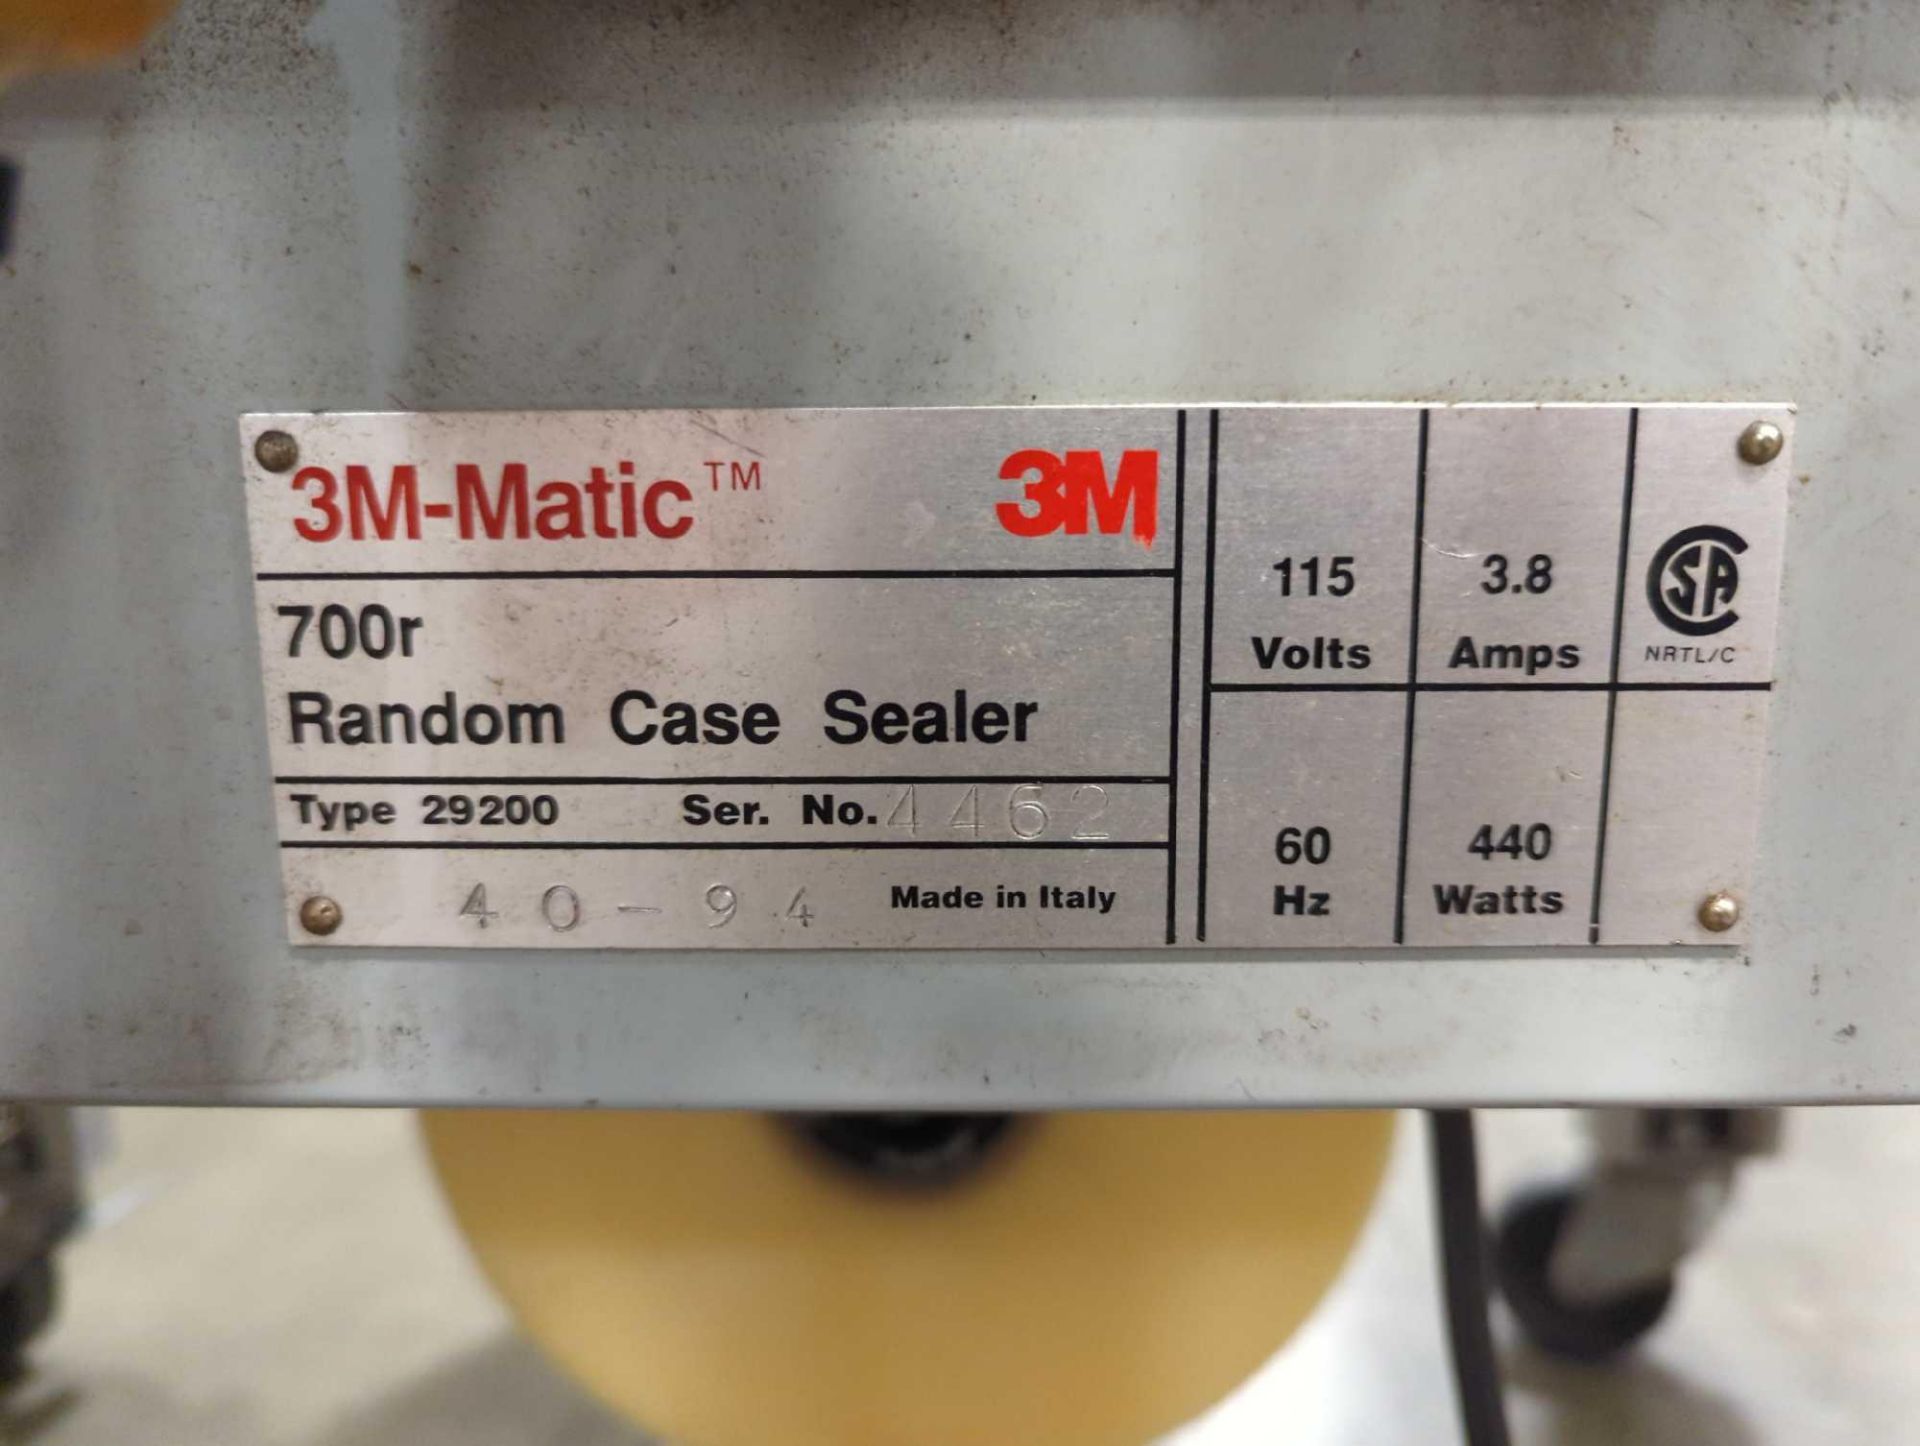 3M-MATIC 700r Random Case Sealer - Bild 10 aus 11